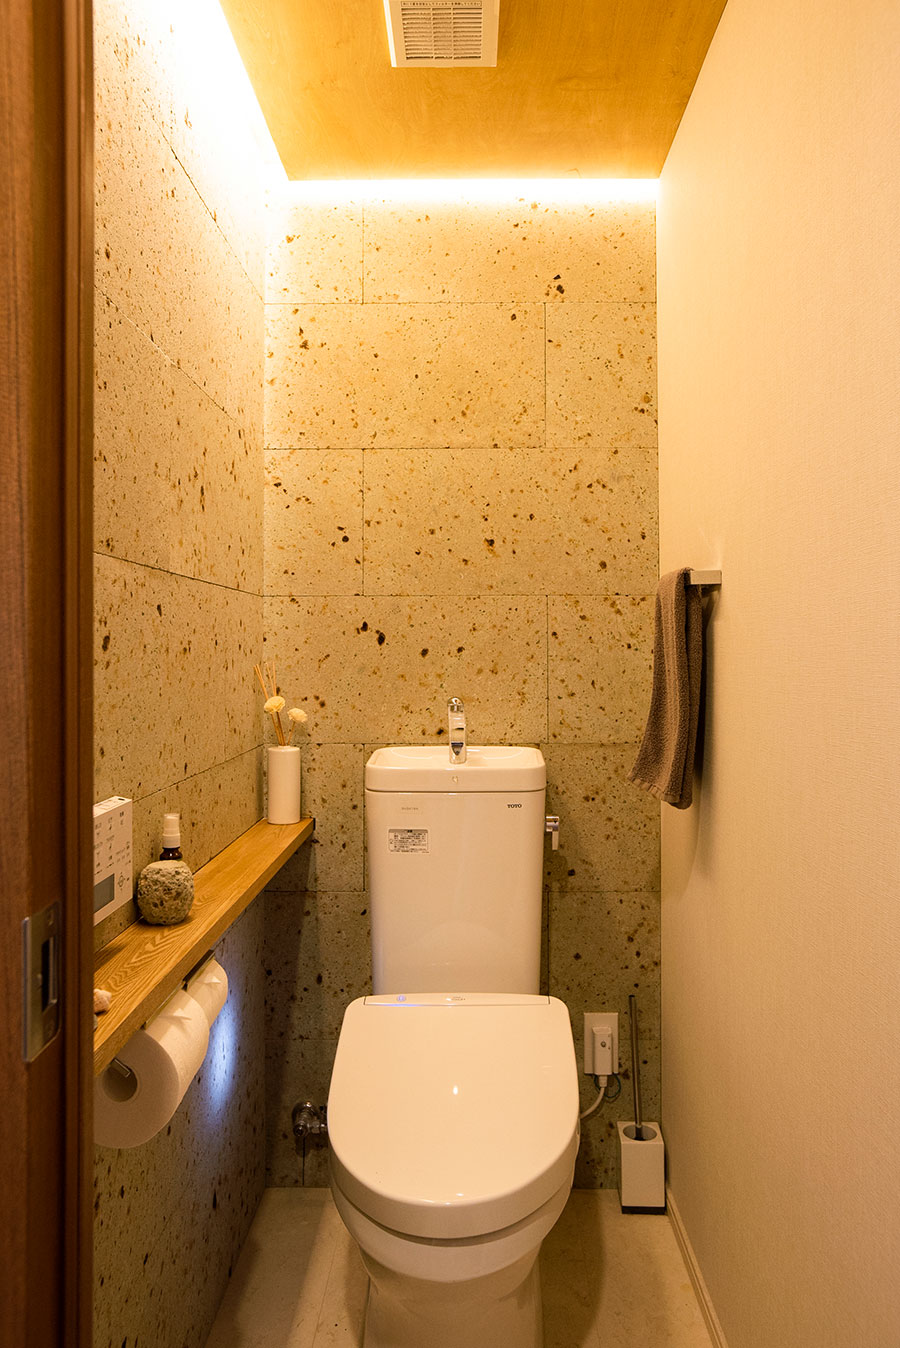 トイレにも大谷石を贅沢に。天井に板を張り、灯りを間接的に照らしている。